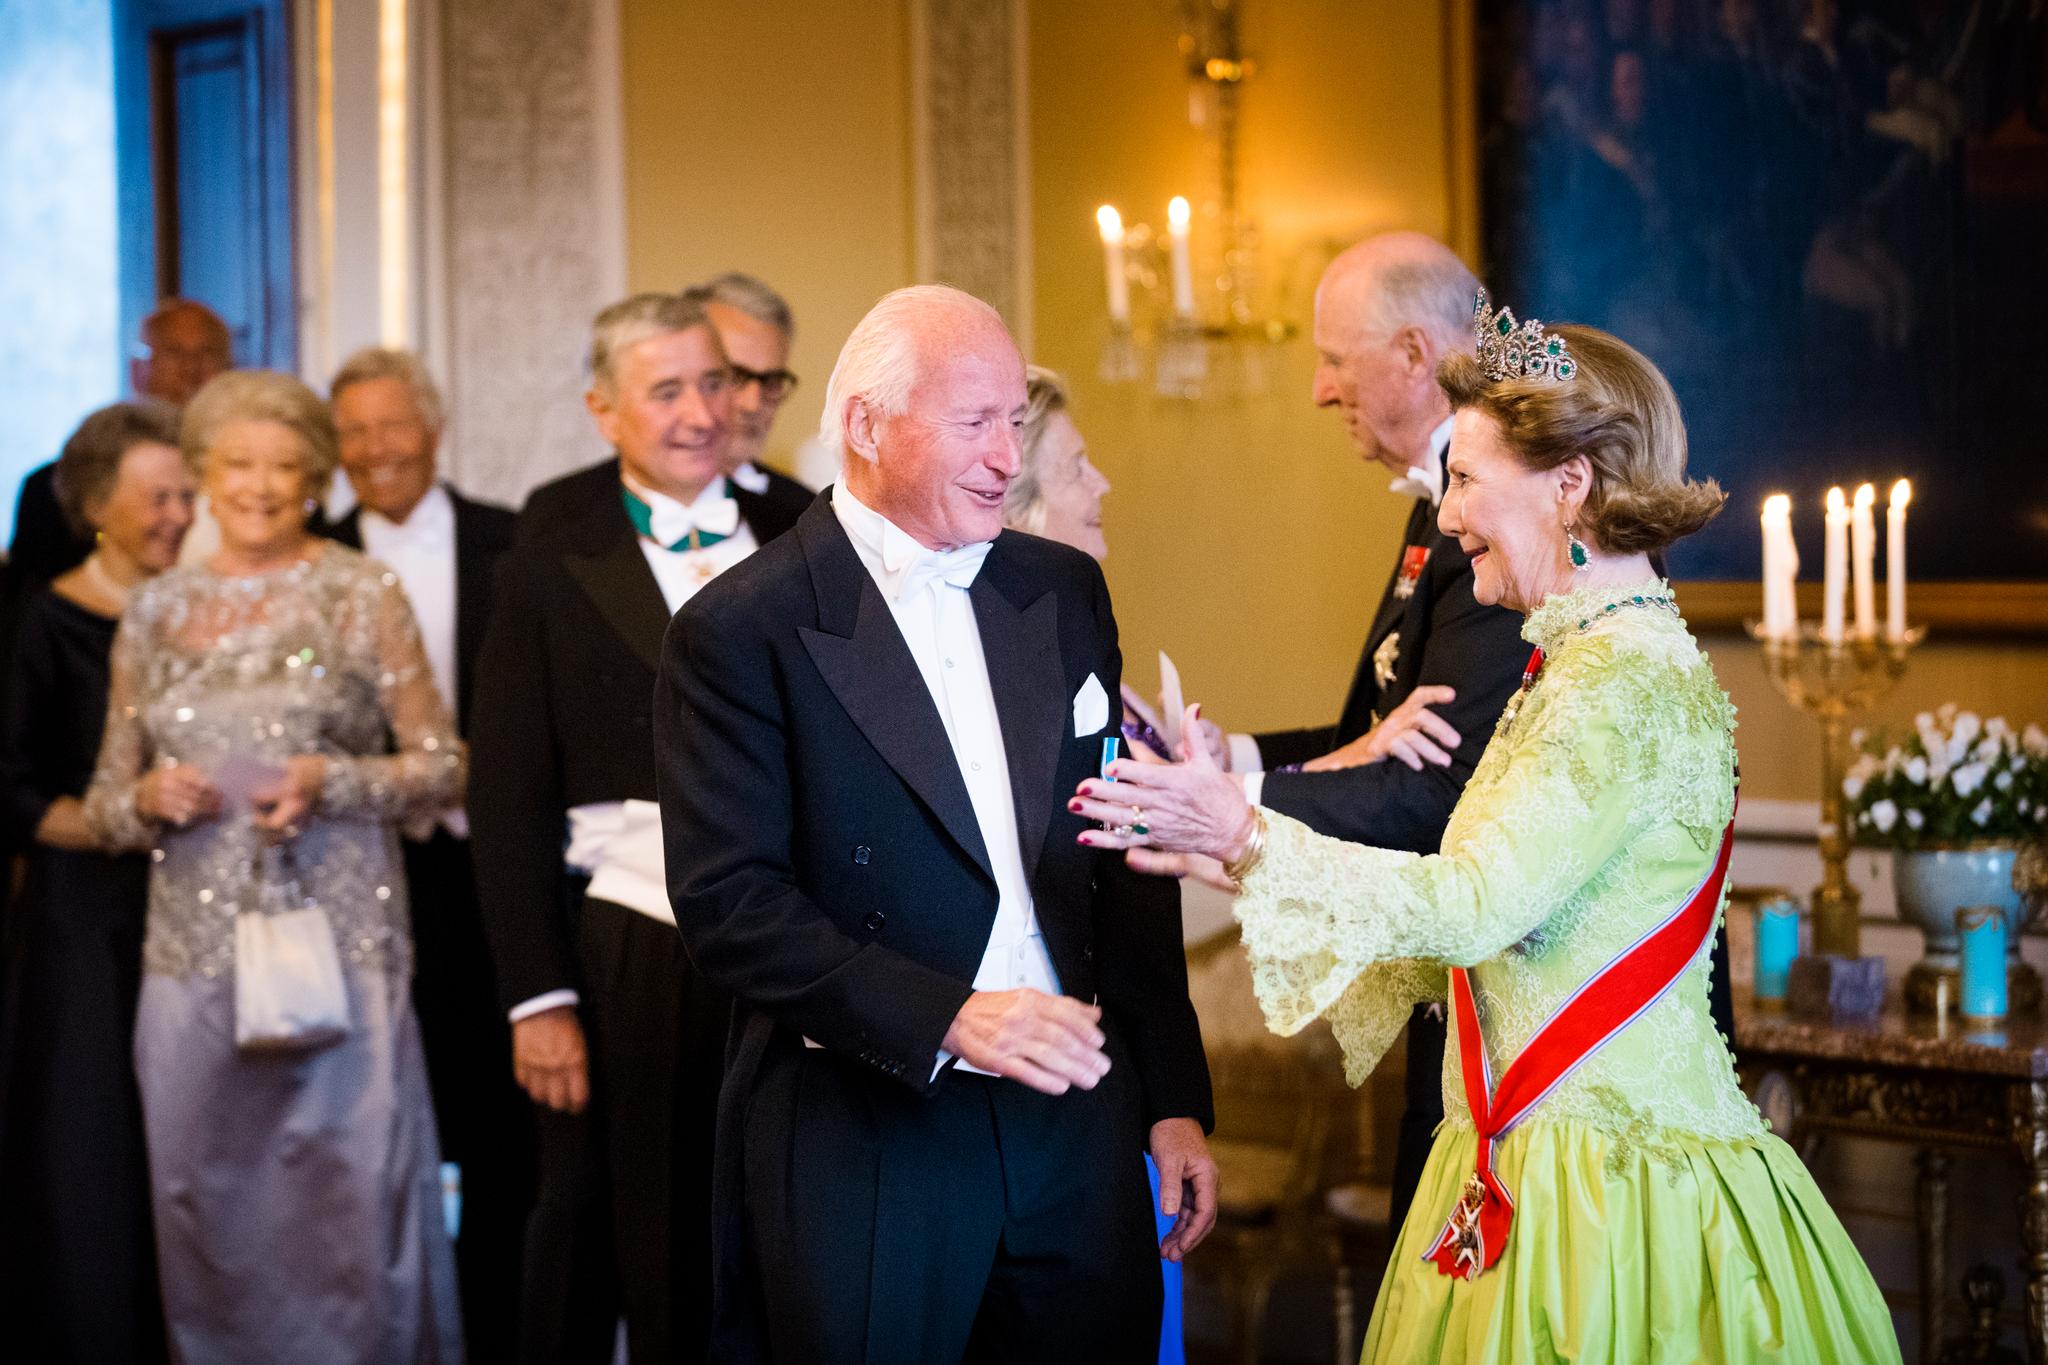 Prislappen for gallamiddagen på Stortinget er ikke kjent. Her tar dronning Sonja mot eiendomsinvestor Christian Ringnes.